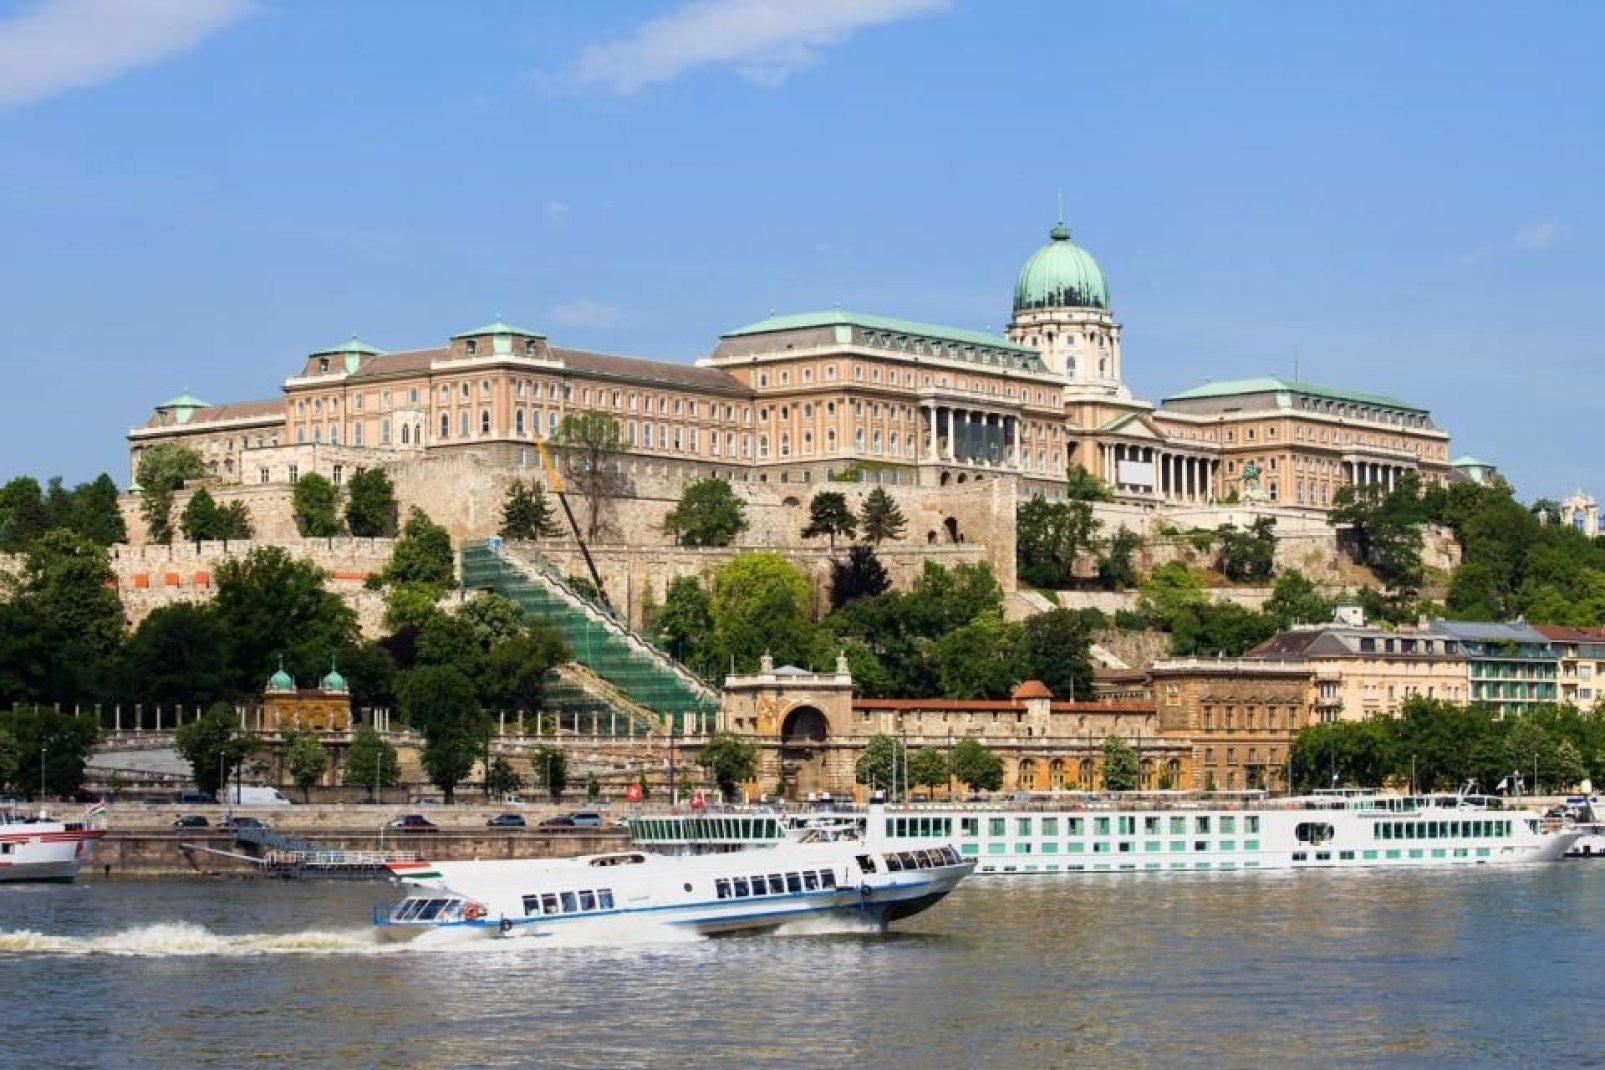 Traversée par le Danube, Budapest est séparée en deux parties : d'un côté Buda, de l'autre Pest. La ville est née du rassemblement de ces deux côtés, ainsi que de l'ancienne ville Obuda. Surnommée la perle du Danube, elle offre à ses visiteurs une multitude d'activités culturelles avec tous ses musées, ses théâtres et ses deux opéras. On accède aux hauteurs de Buda par un funiculaire permettant de ...